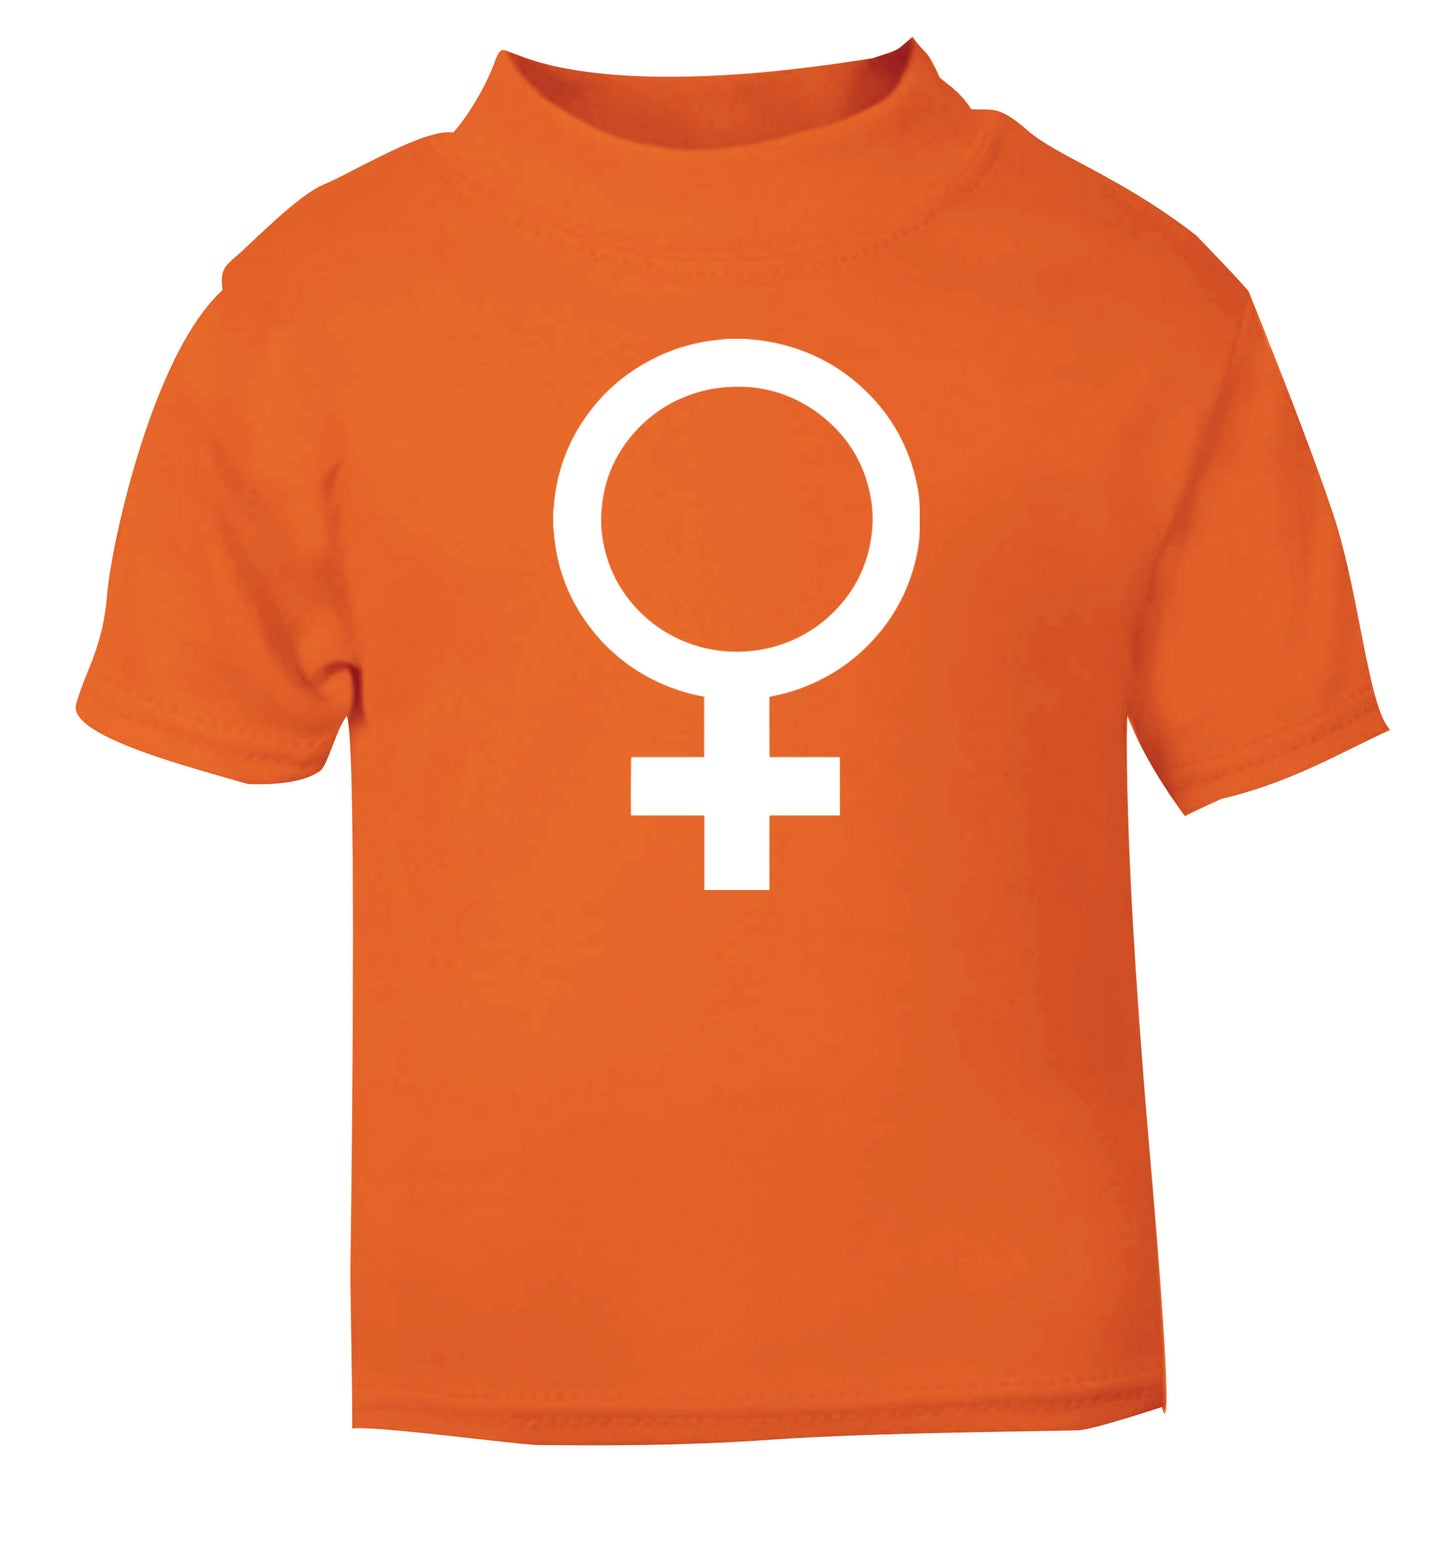 Female symbol large orange Baby Toddler Tshirt 2 Years